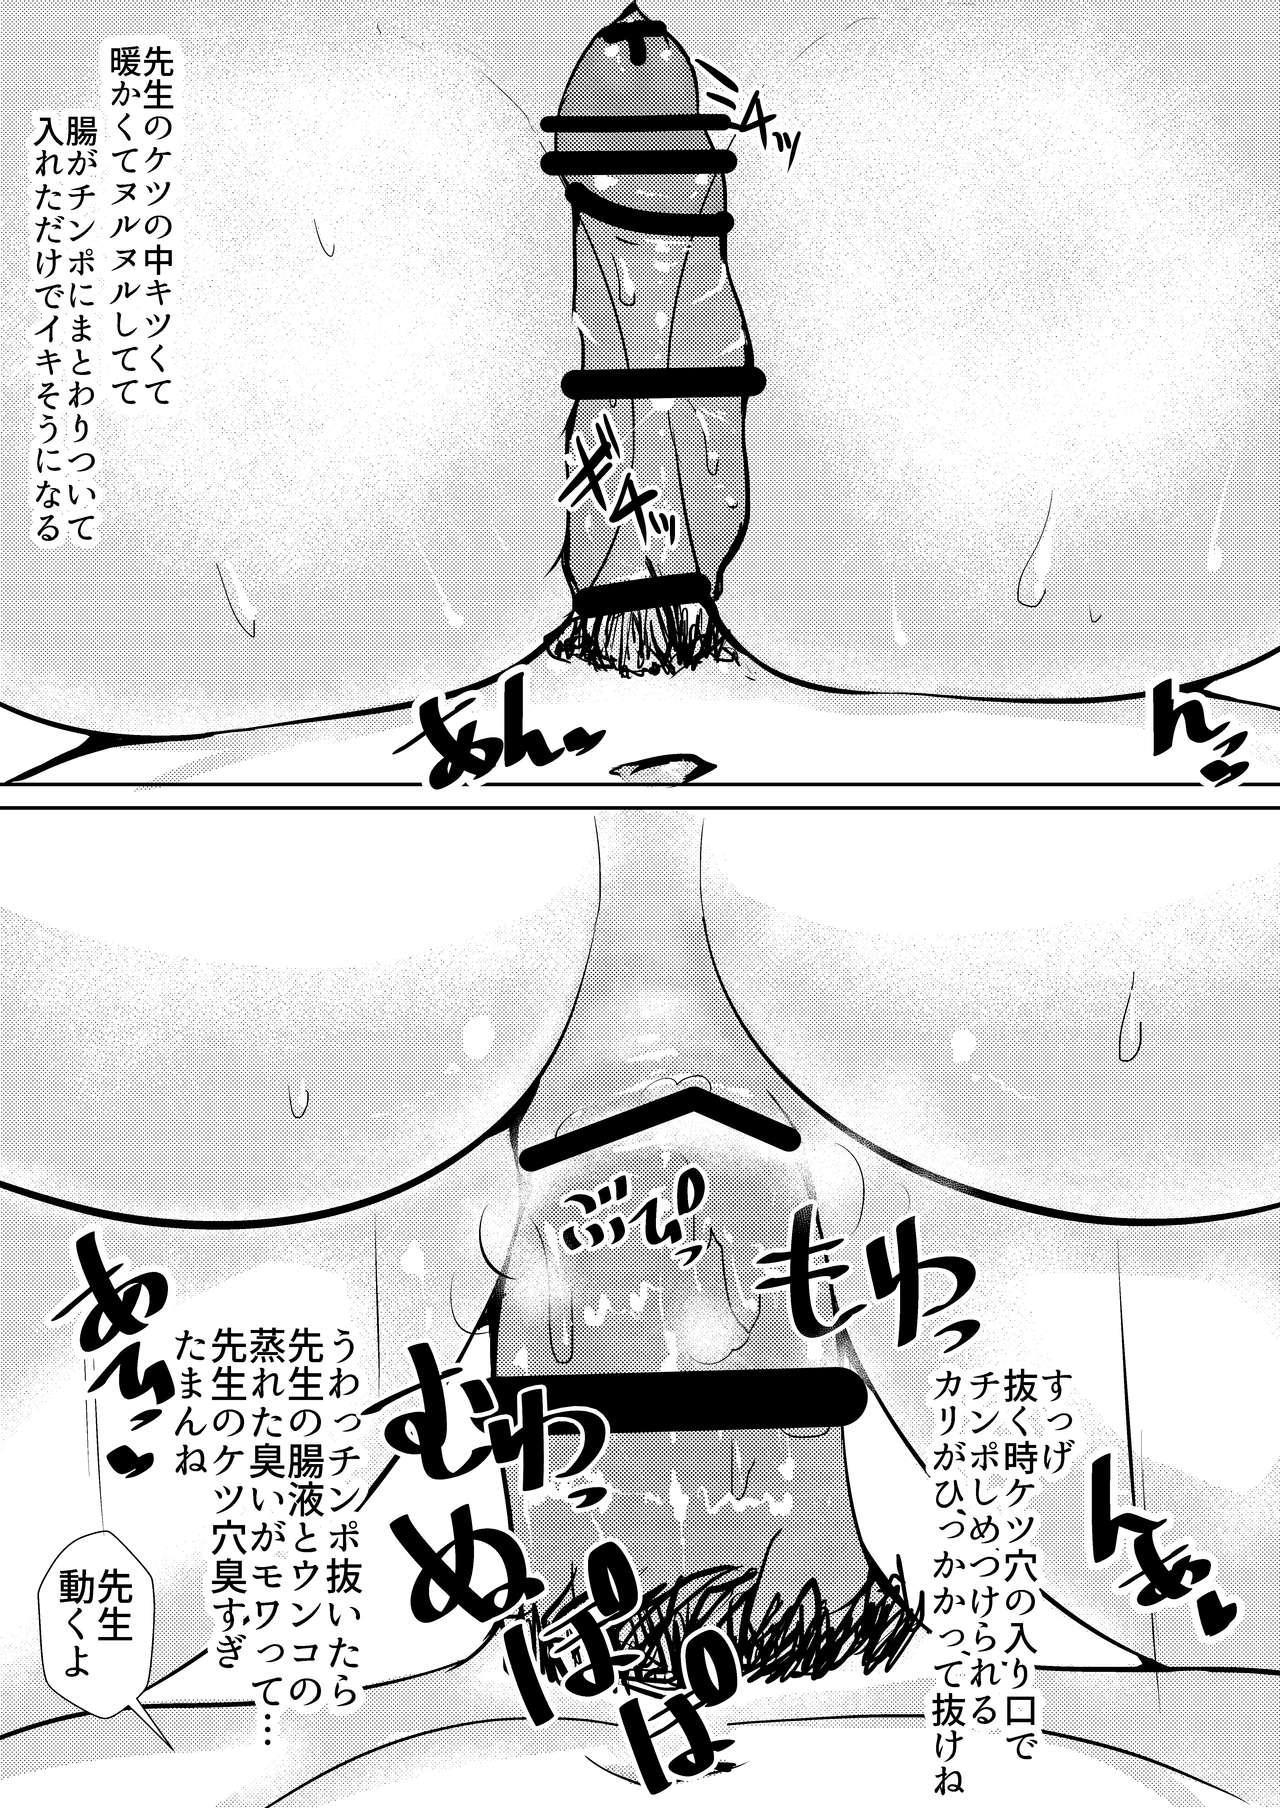 Maniacs Series Dainidan - Oshiri Maniacs Vol. 1 9